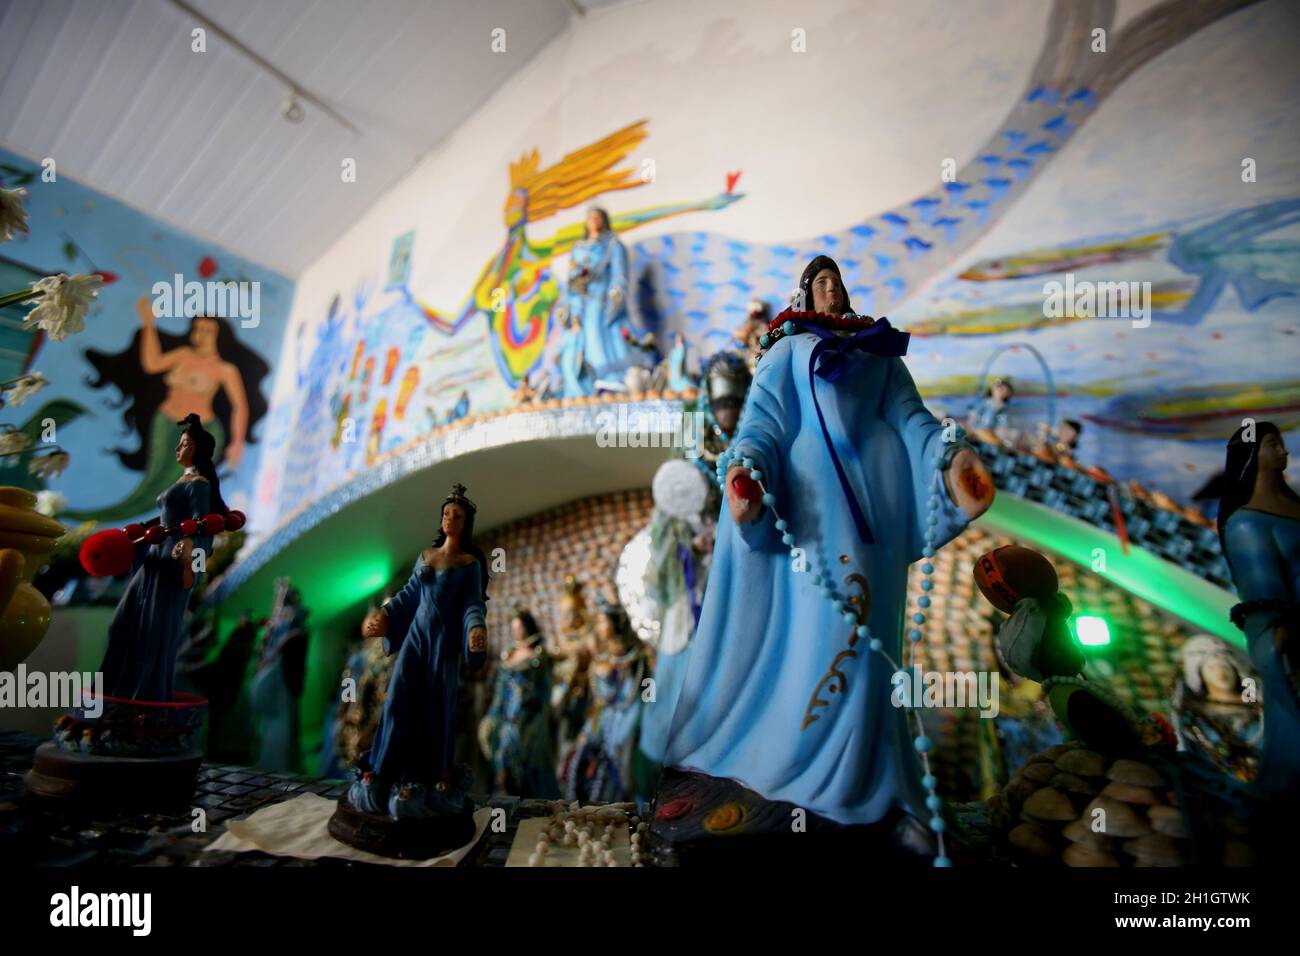 salvador, bahia / brasilien - 17. januar 2018: Bilder der orixa Yemanja sind im Heiligtum der Fischerkolonie des Rio Vermelho-Nachbarortes zu sehen Stockfoto